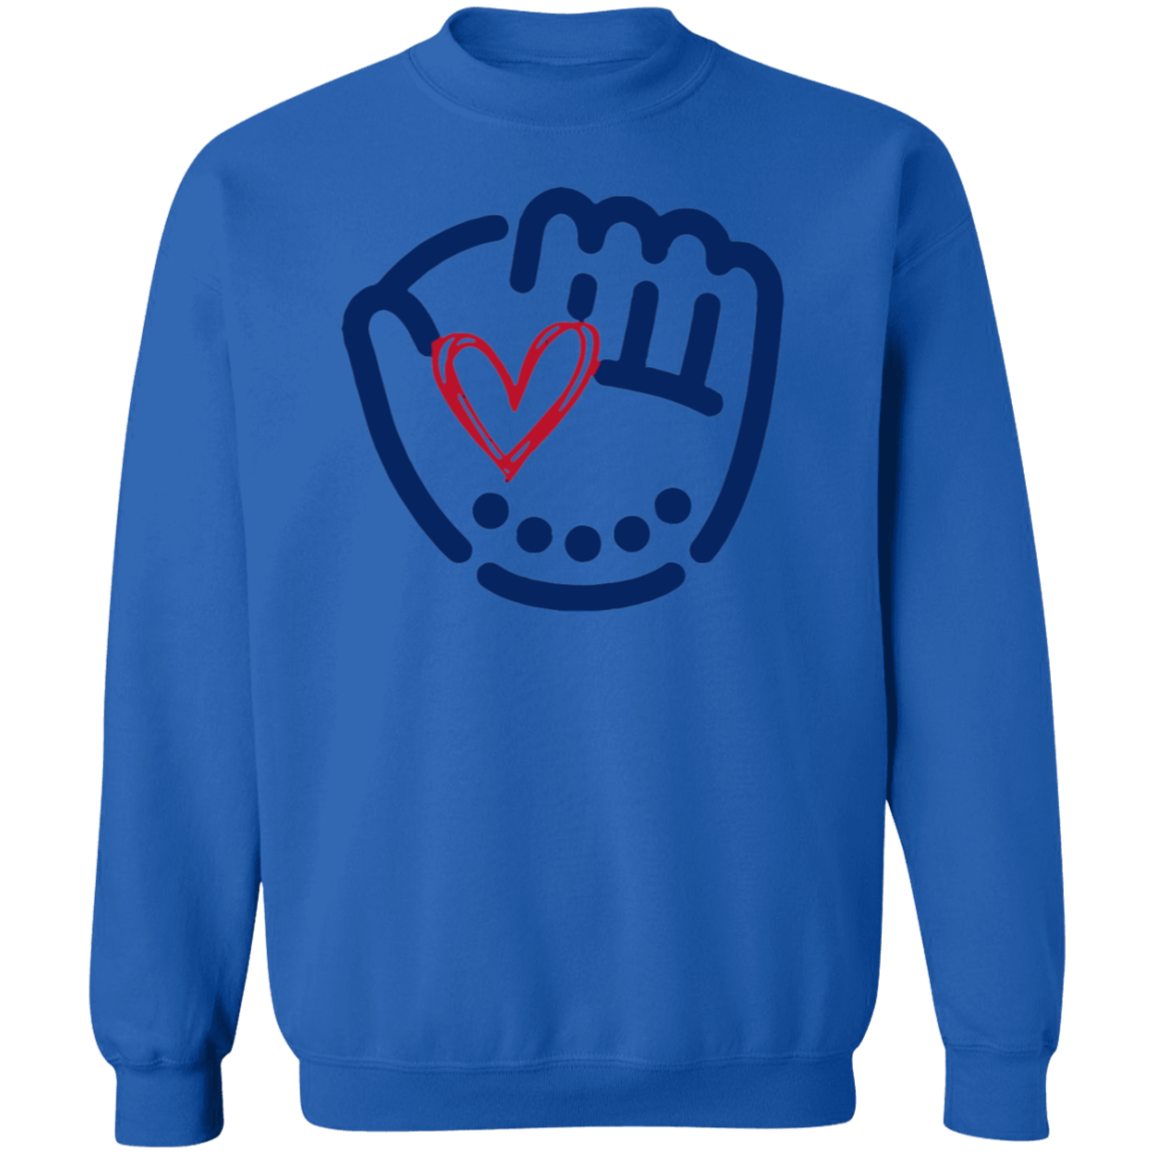 Baseball Glove Premium Crew Neck Sweatshirt